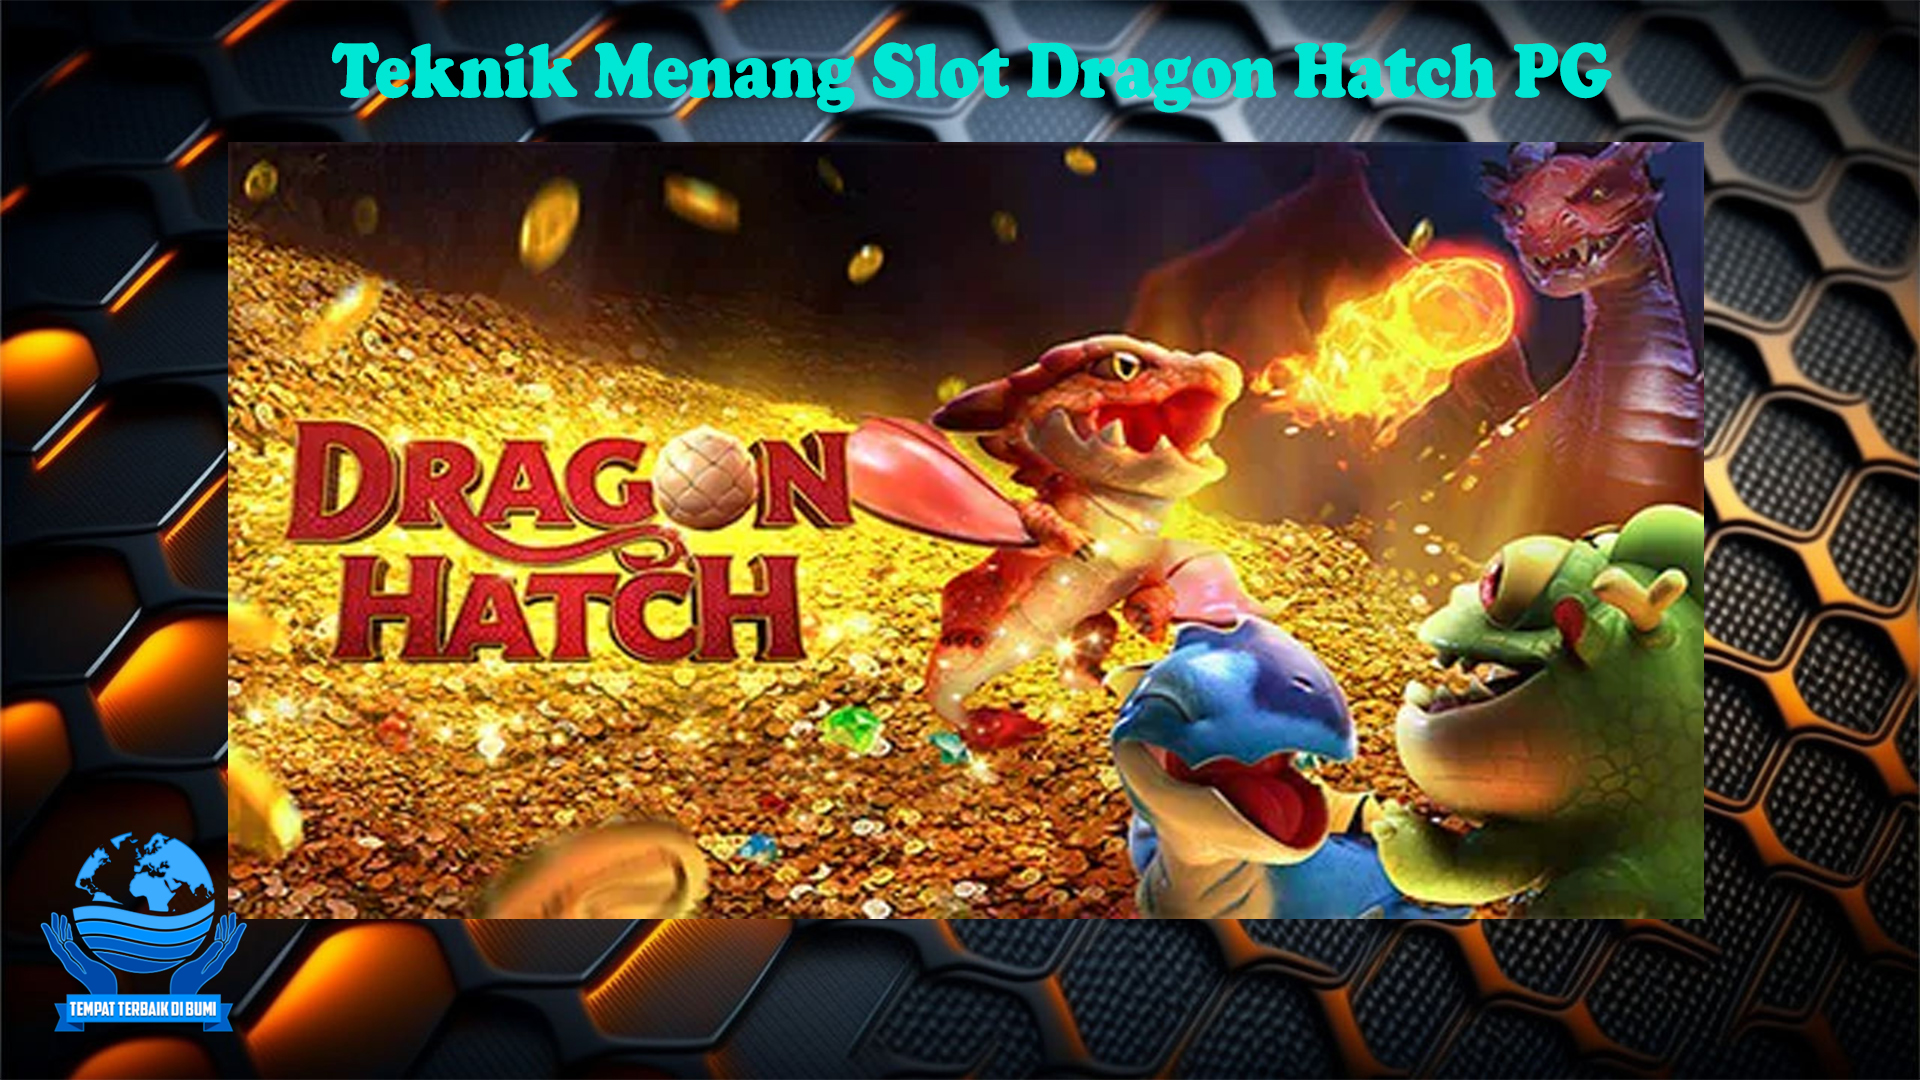 Teknik Menang Slot Dragon Hatch PG